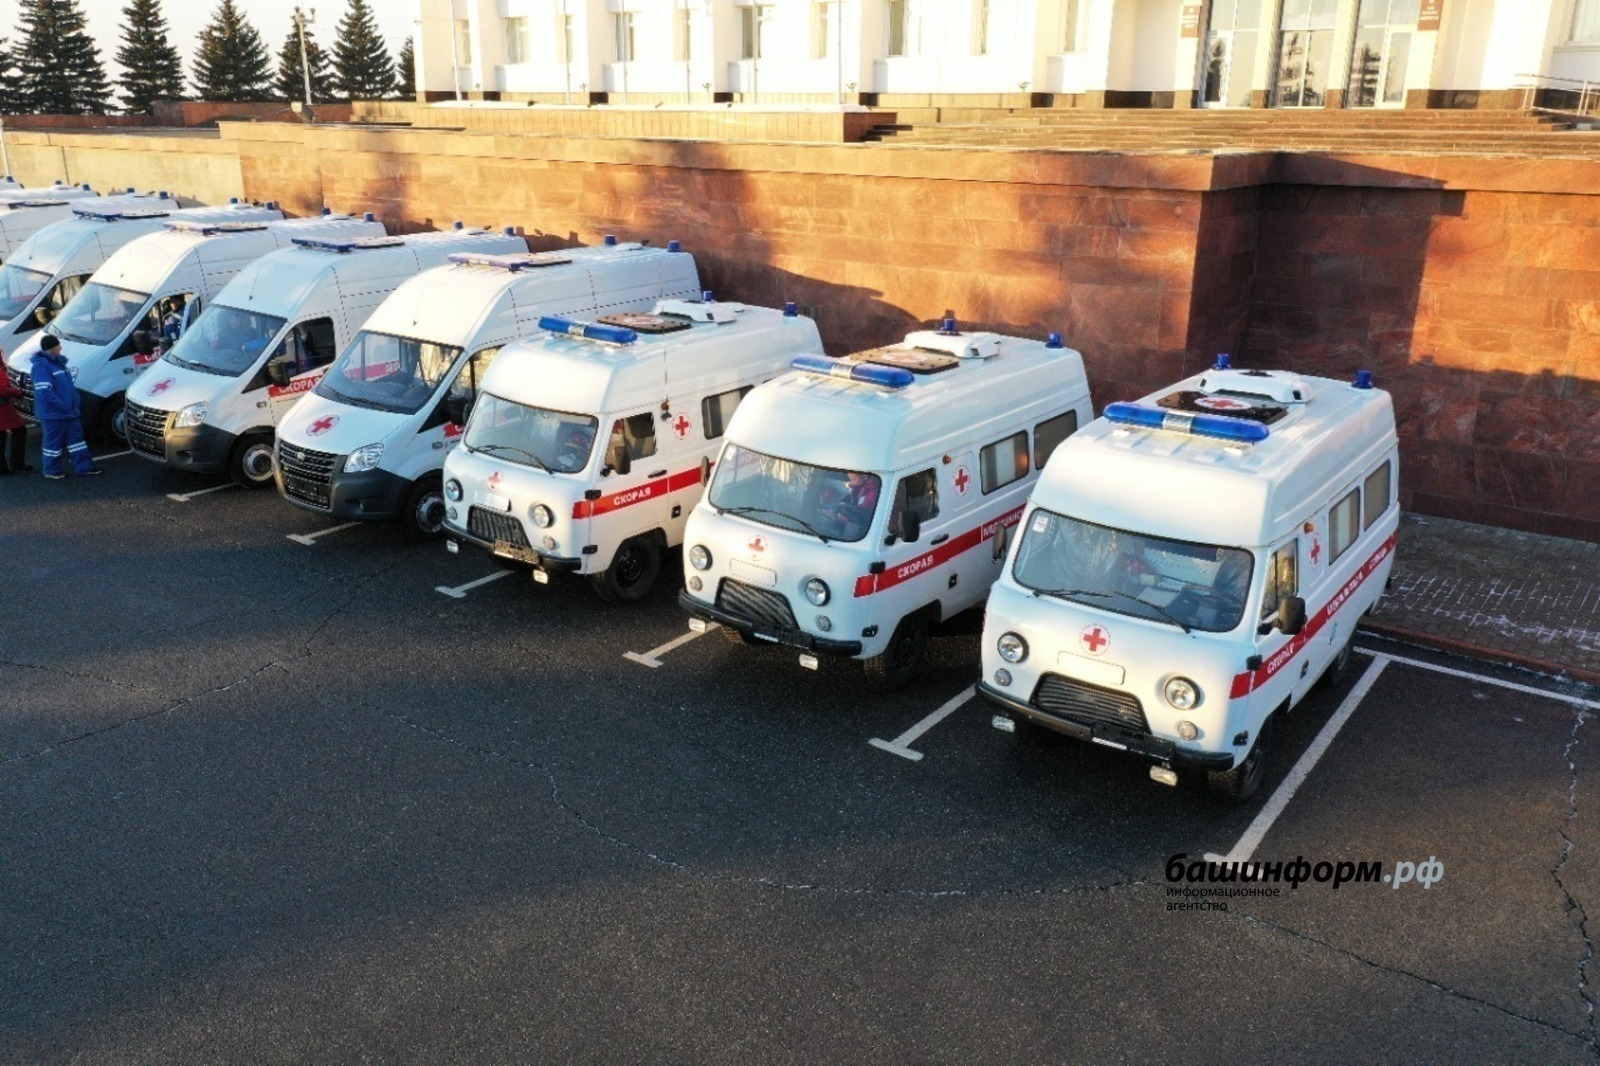 Министерство здравоохранения Башкирии разработало проект модернизации службы скорой помощи